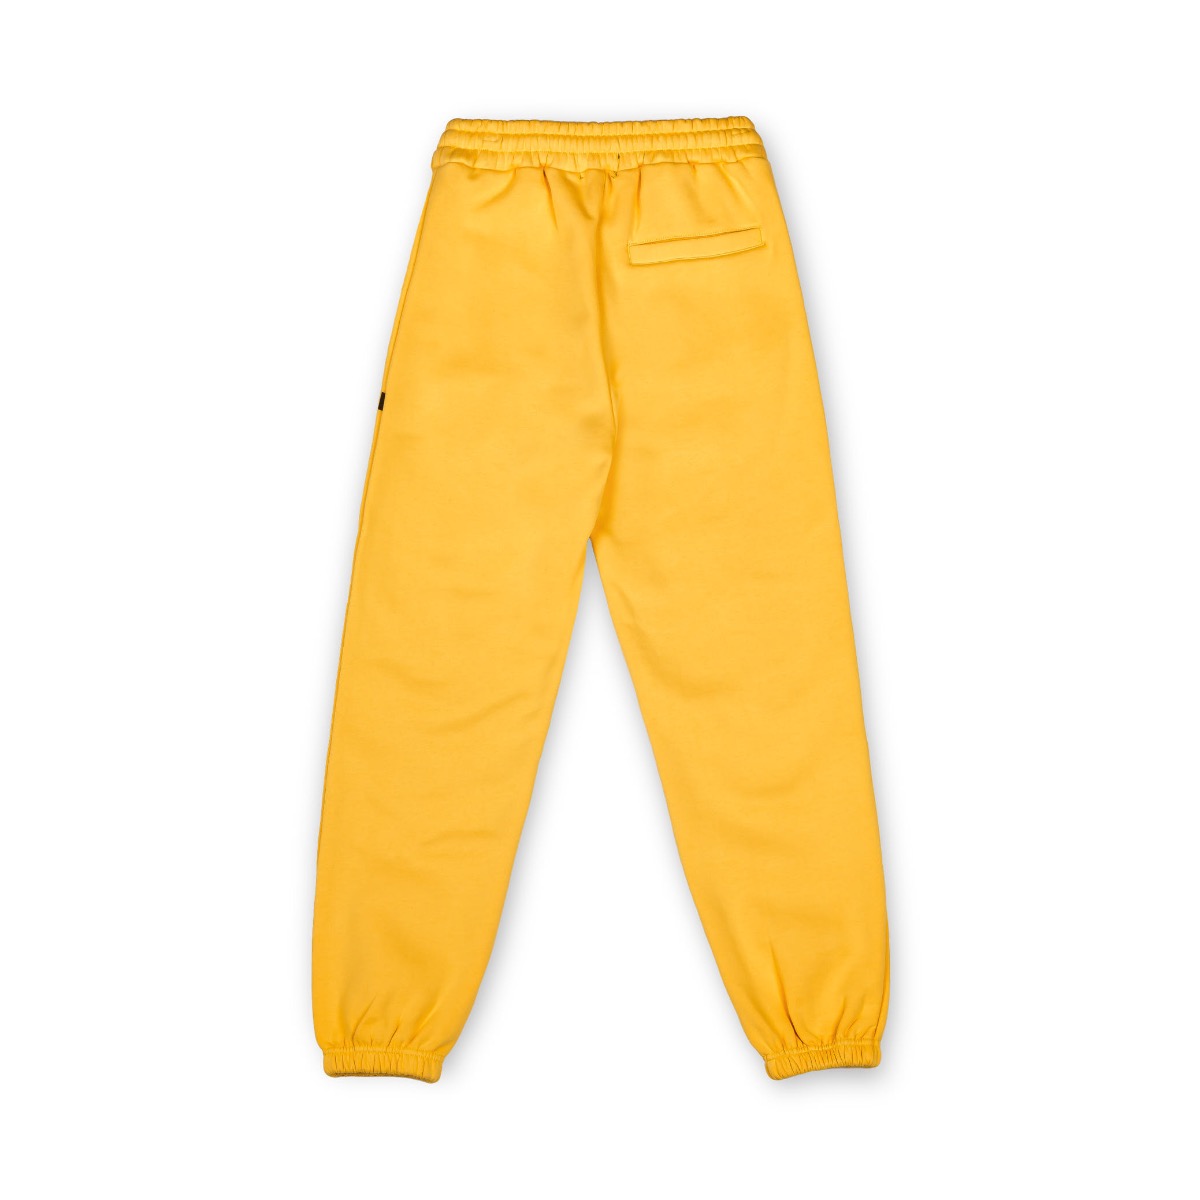 Grimey Official Store | Grimey.com de chandal pantalones jeans para hombre Headwear, Accesories,